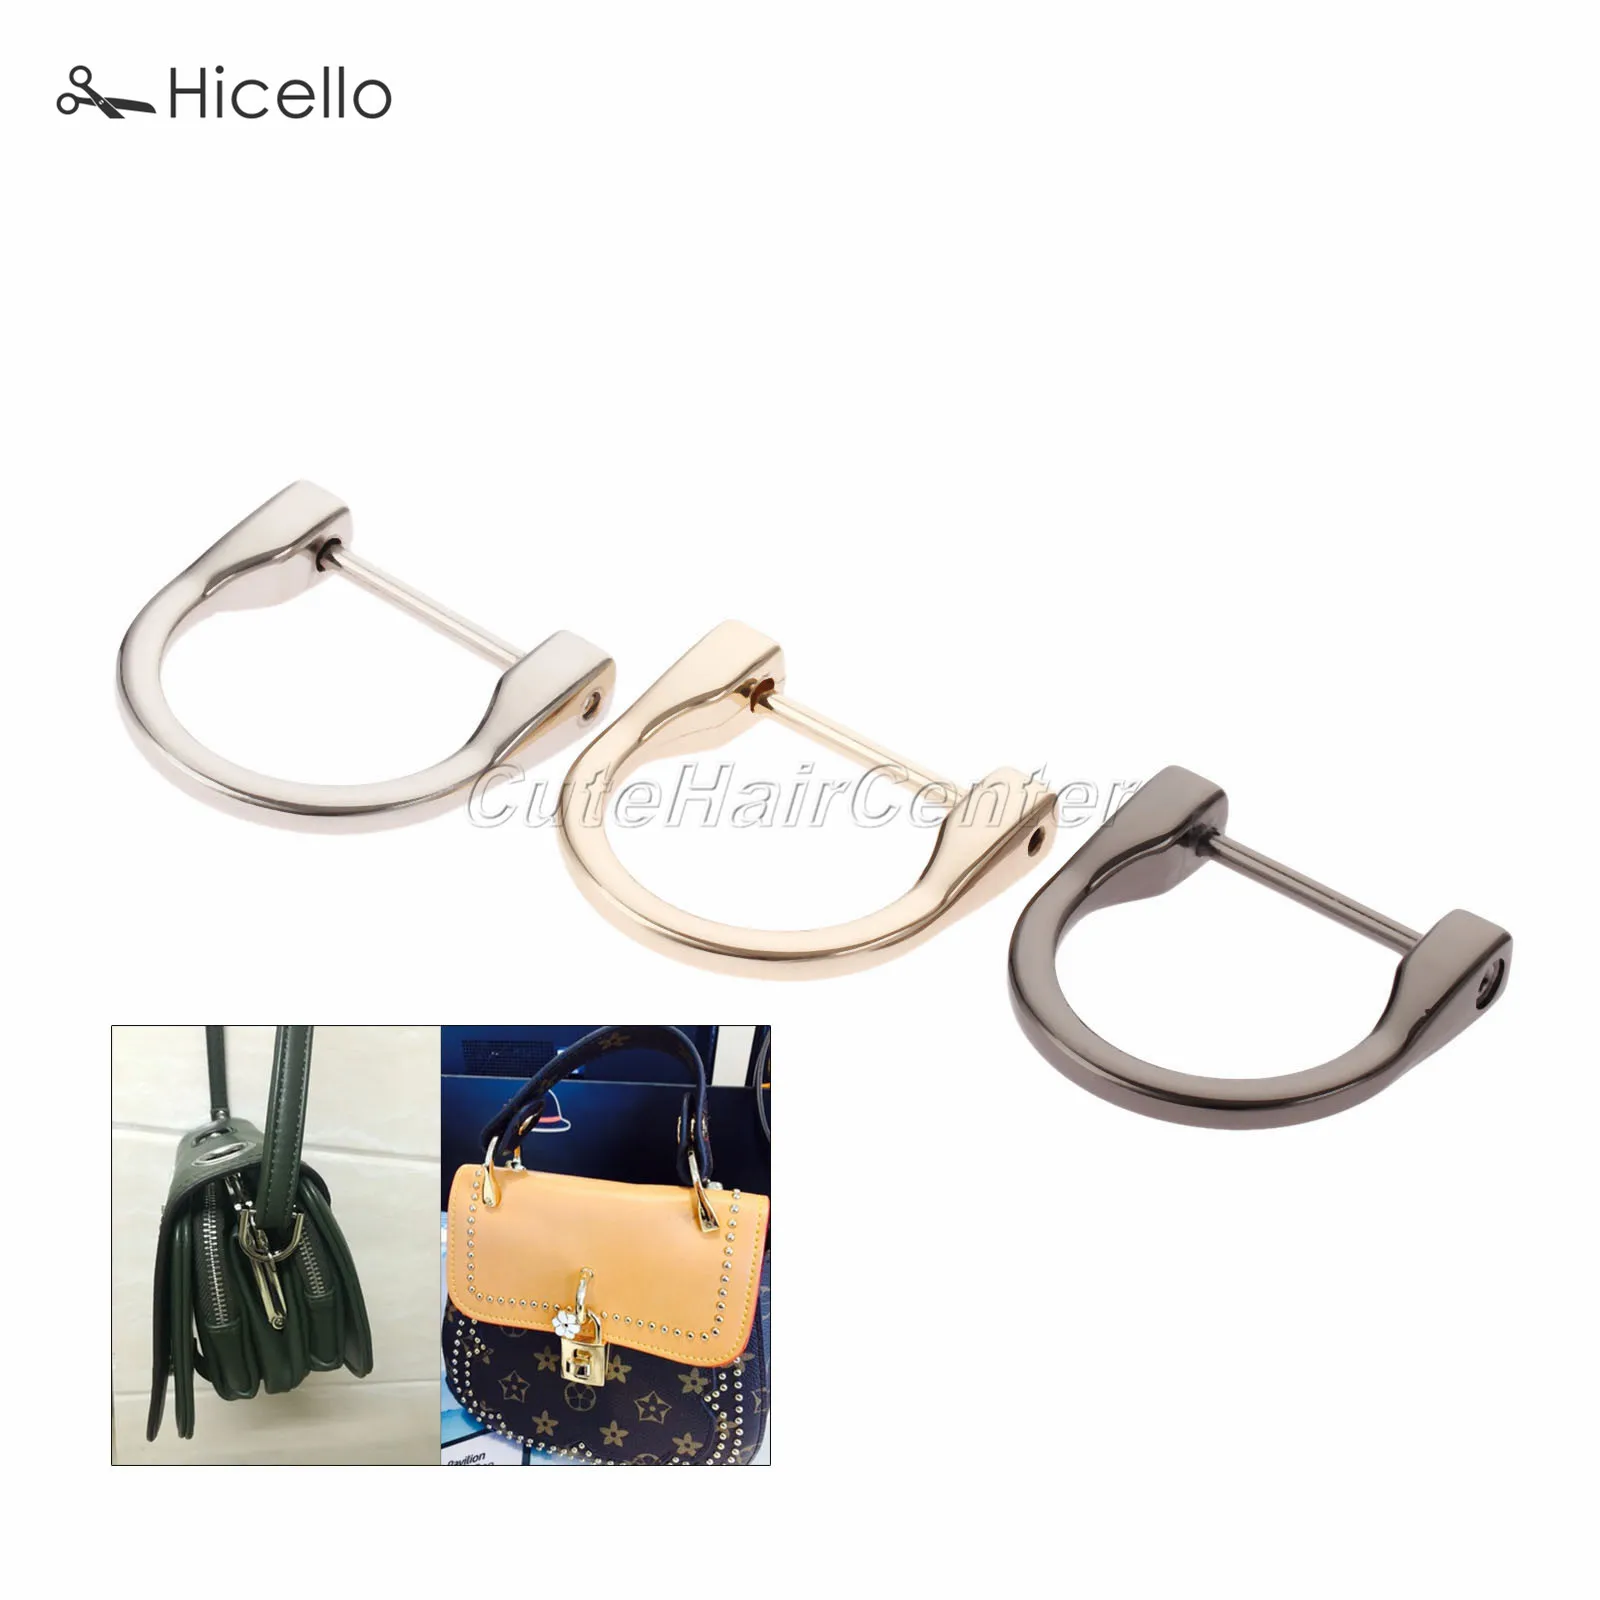 2 шт D кольца для пряжки со съемным винтом из цинкового сплава 25 мм(ID) Dee-Ring багажные аксессуары кожаные сумки 3 цвета Hicello